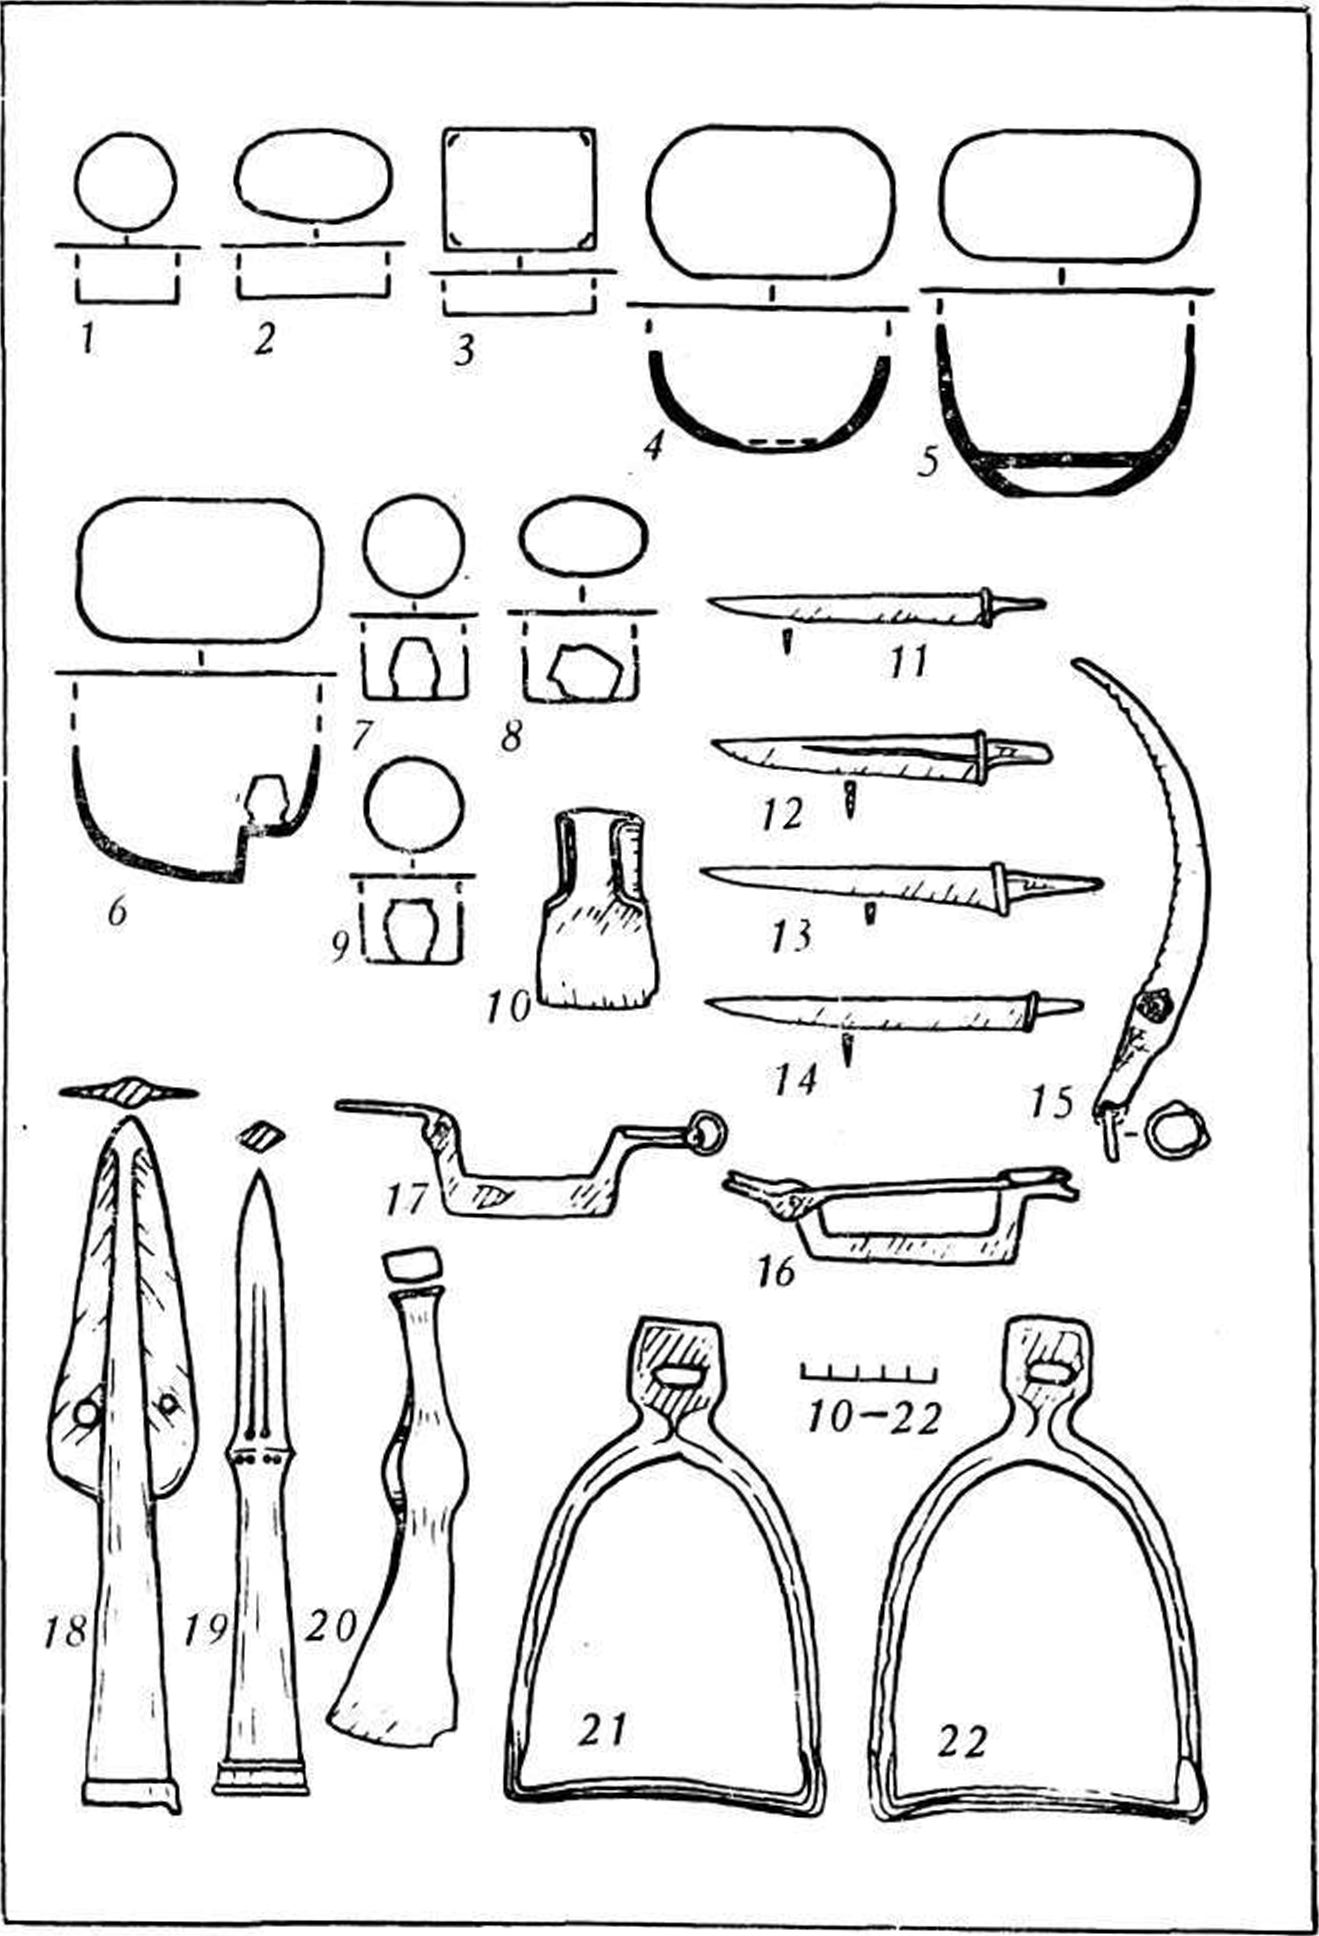 Рис. 9. Сухогомольшанский могильник. Типологические схемы погребений (1—9). Инвентарь комплекса XVI (10—22)